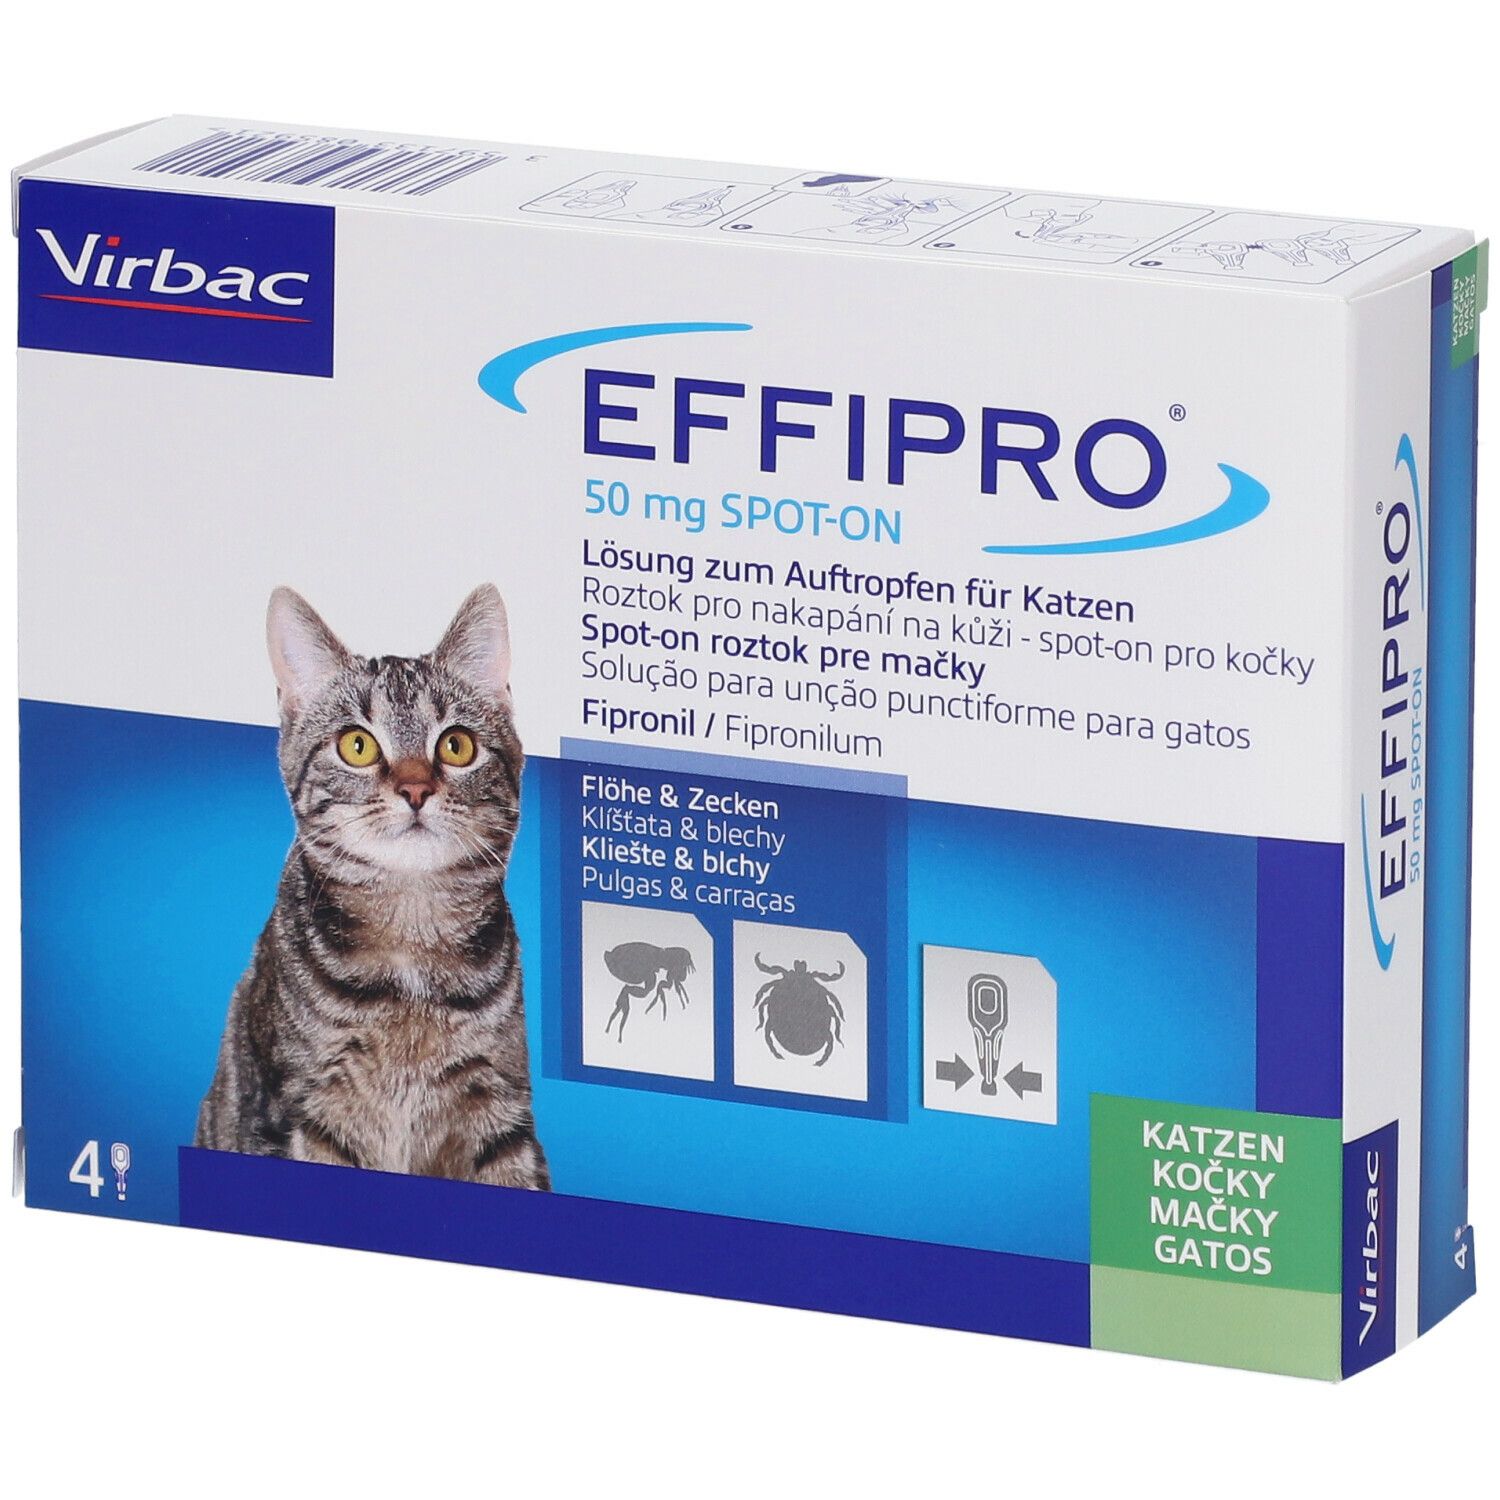 EFFIPRO® 50 mg Lösung zum Auftropfen für Katzen